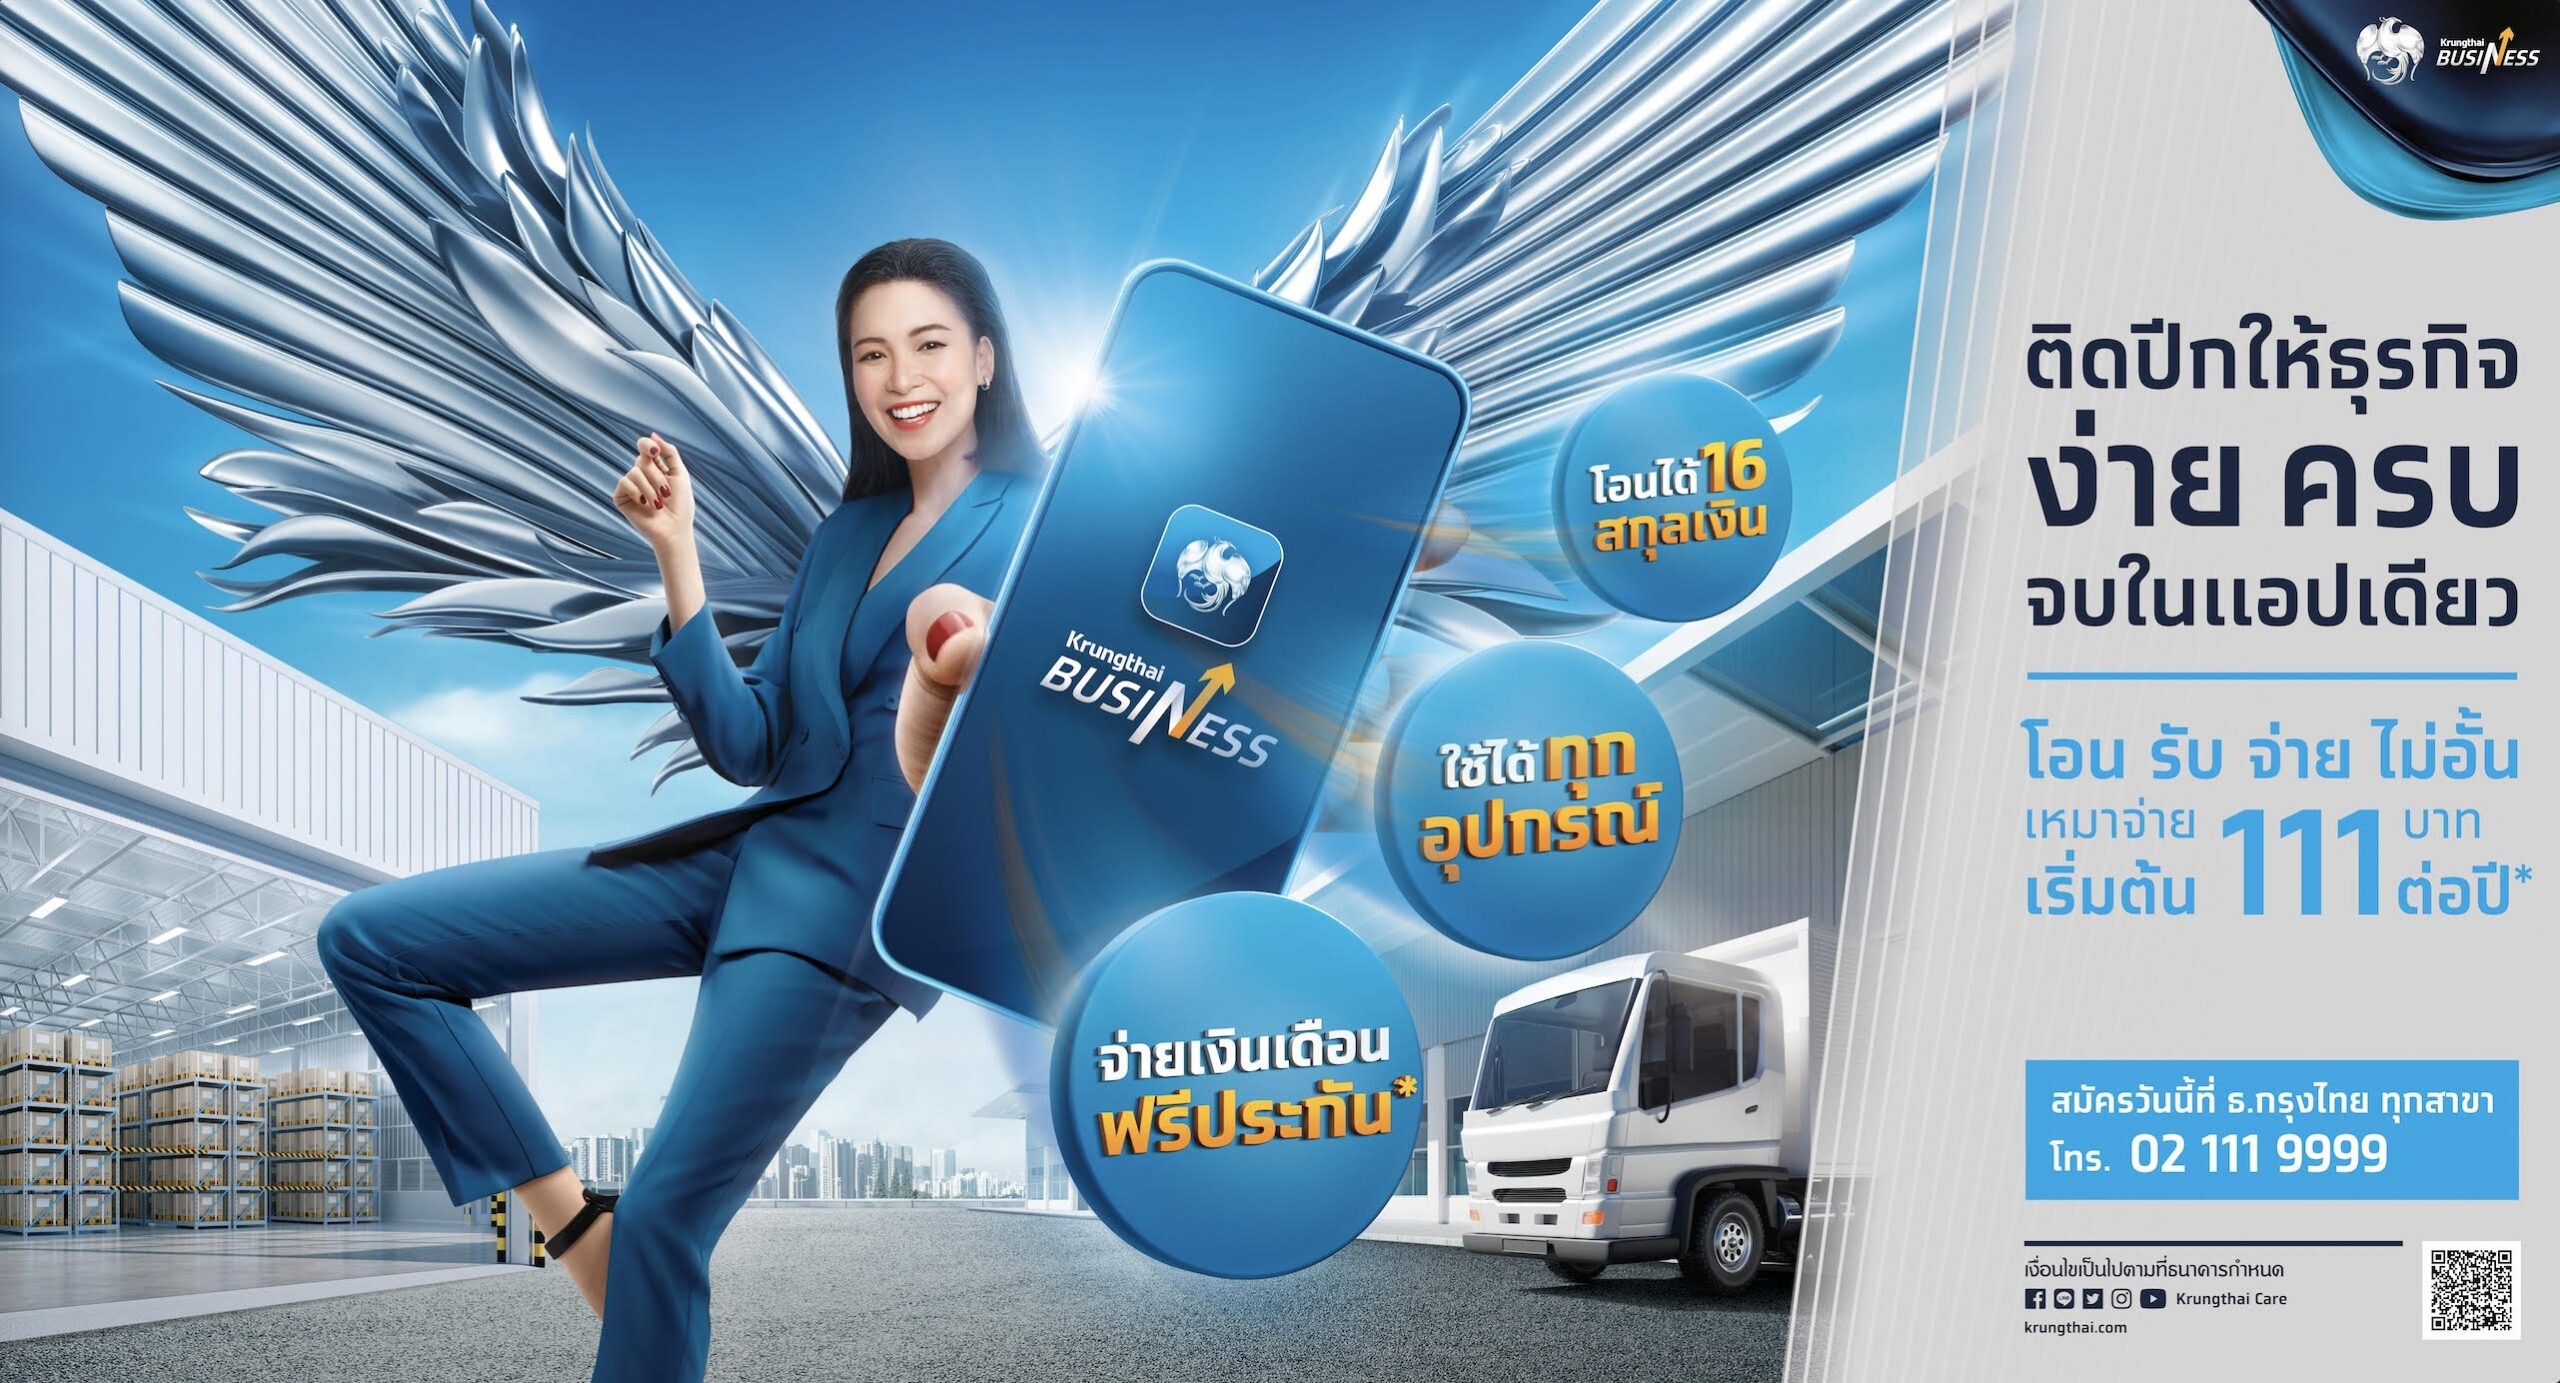 กรุงไทยเปิดตัวแอปฯ "Krungthai Business" ติดปีกธุรกิจเติบโตยั่งยืน  ใช้งานง่าย ครบ จบ ในแอปฯเดียว